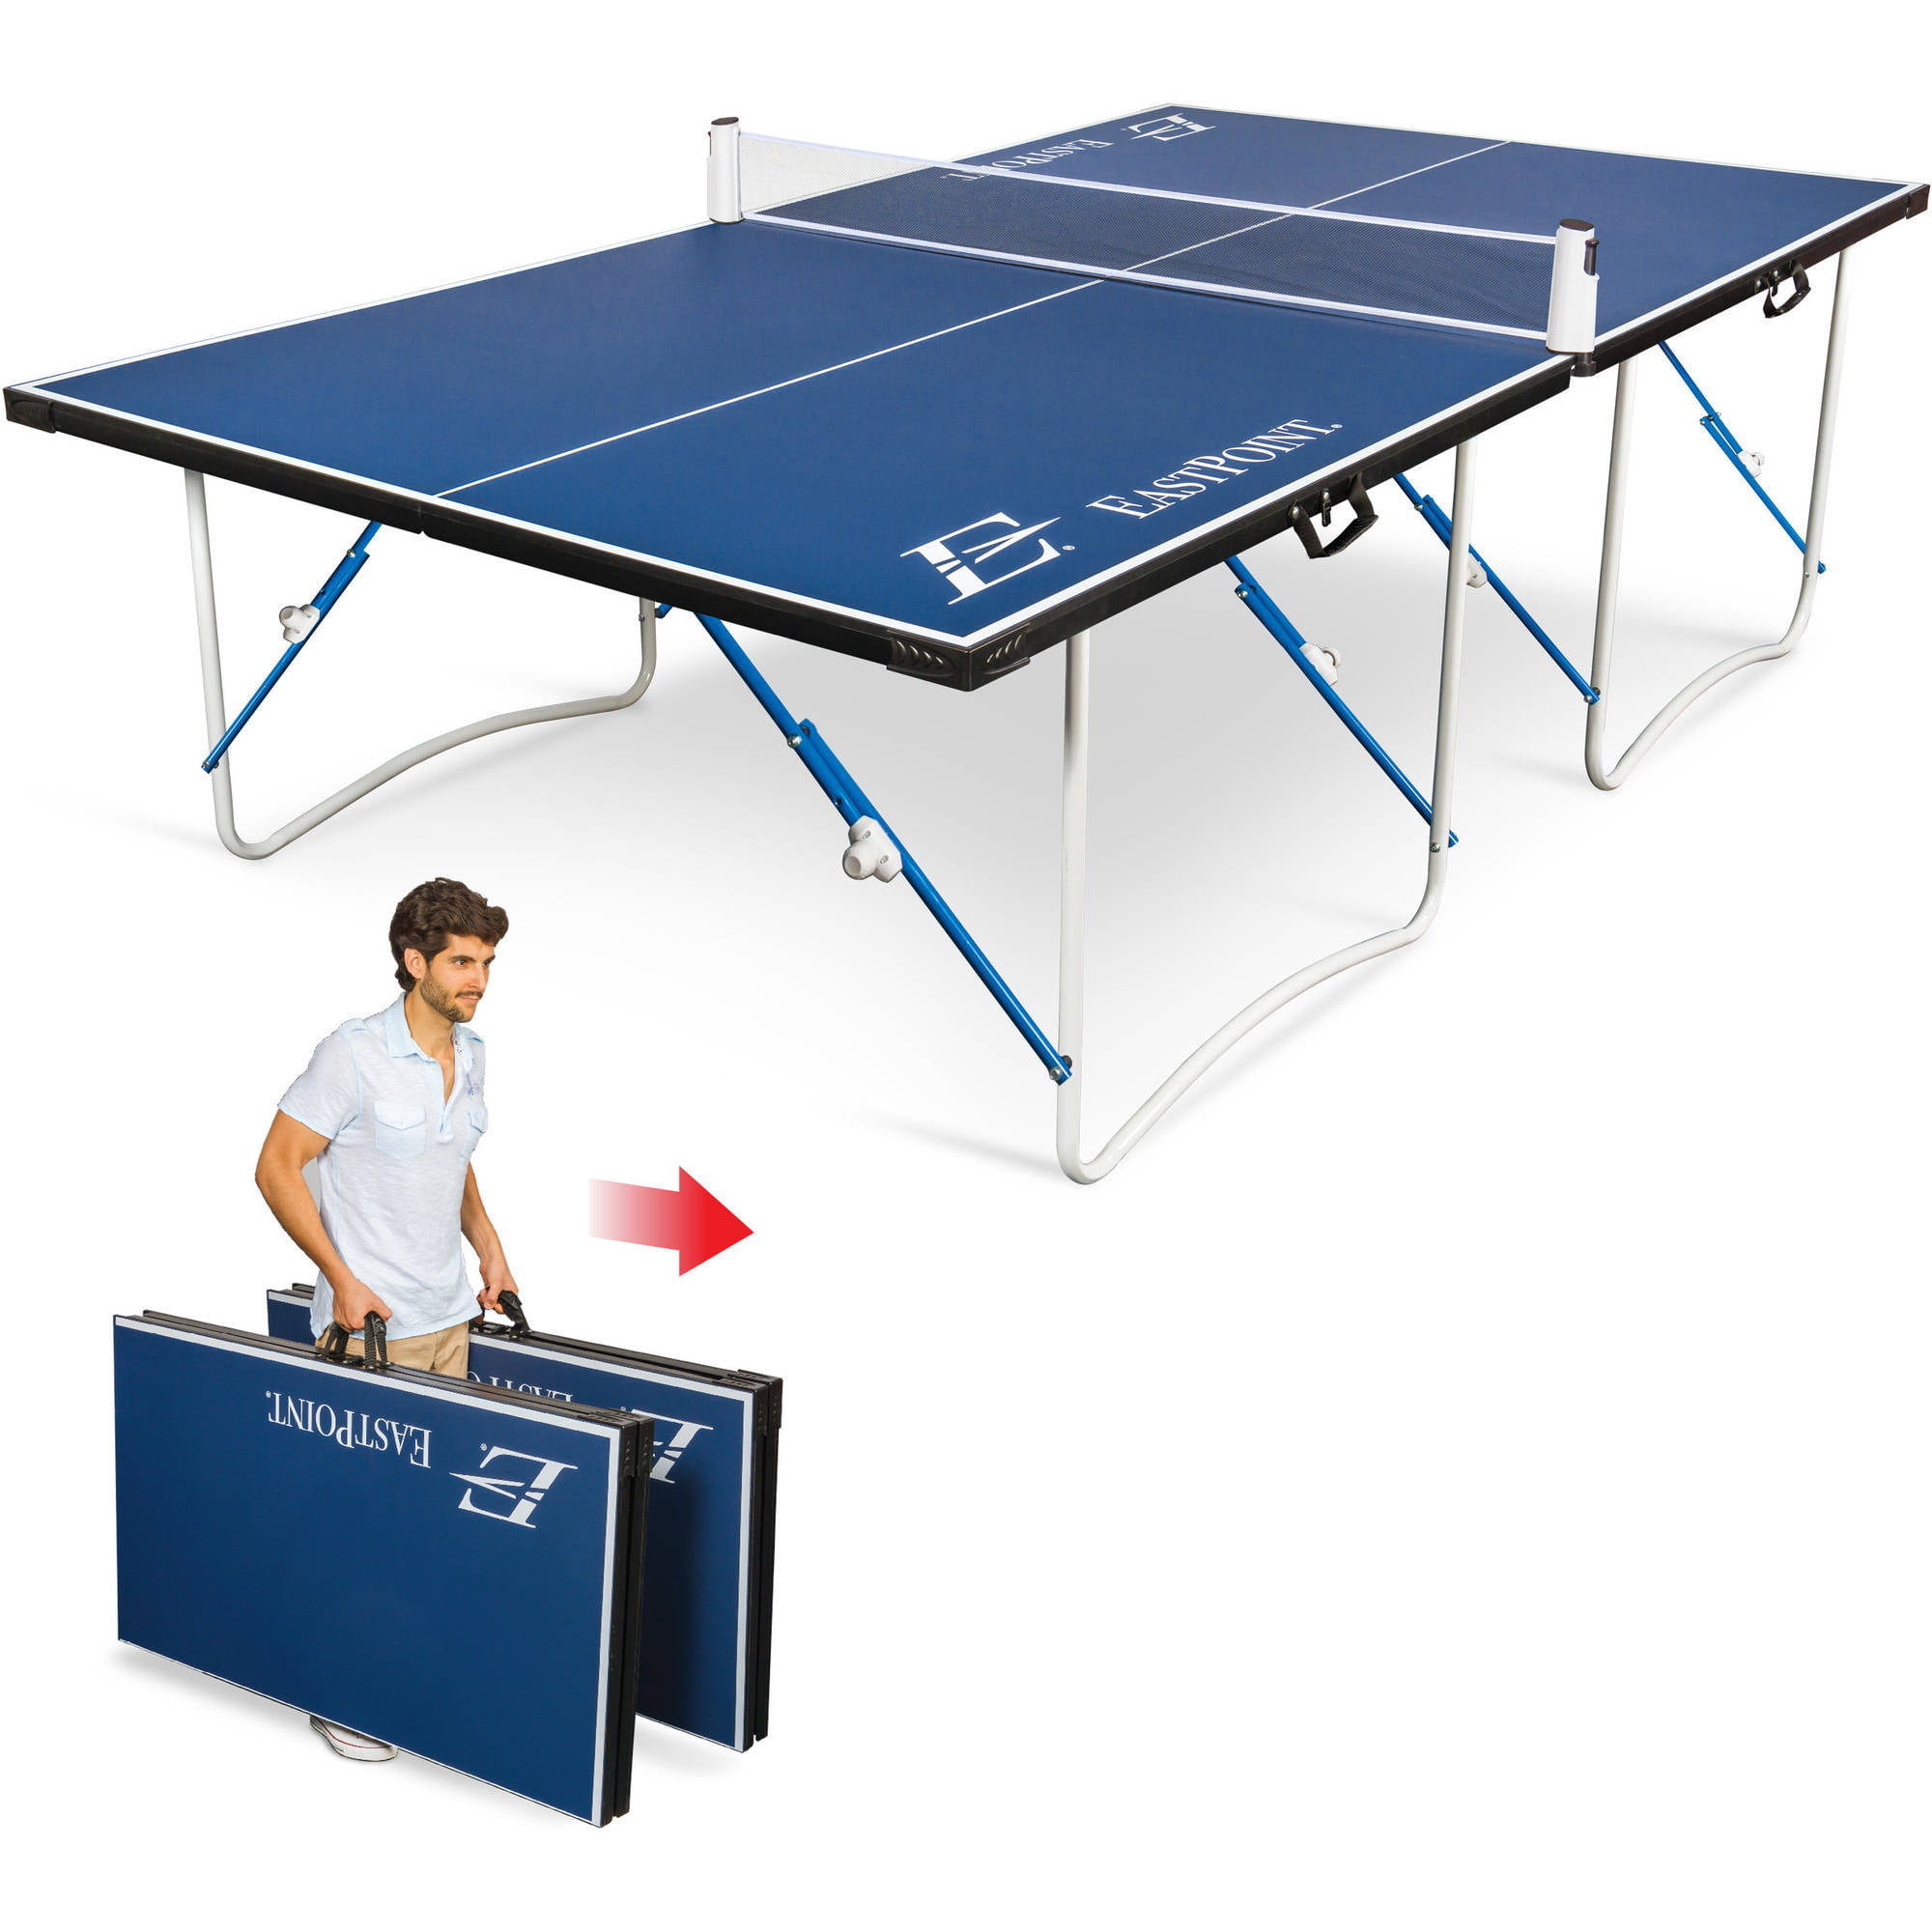 параметры теннисного стола для пинг понга